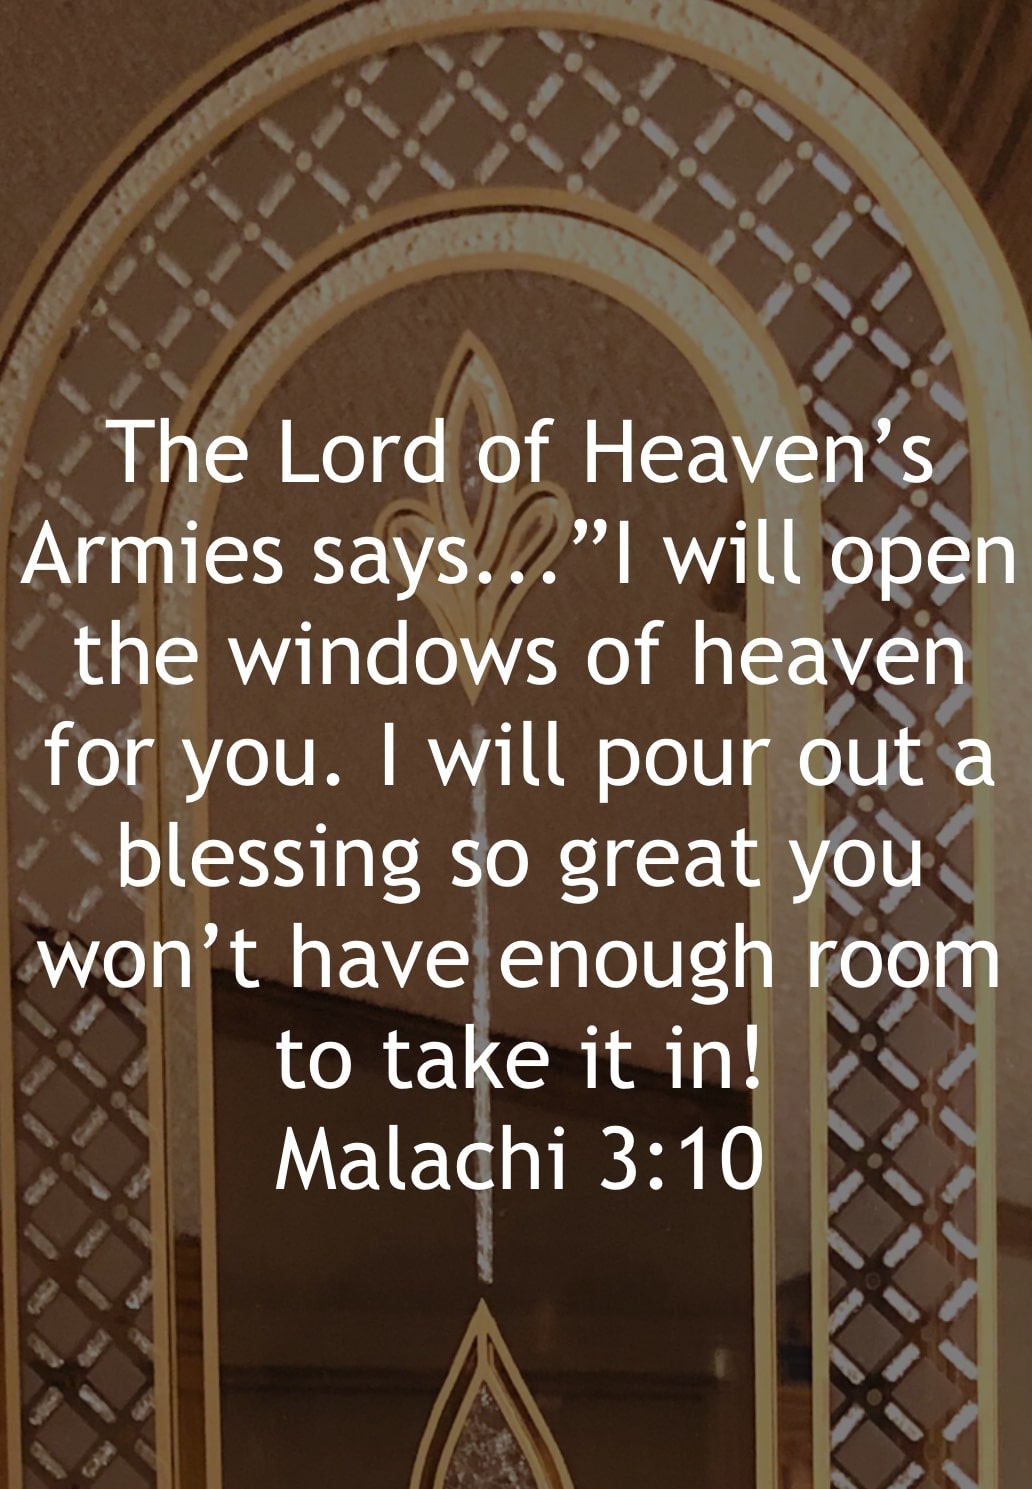 “OPEN WINDOWS OF HEAVEN”